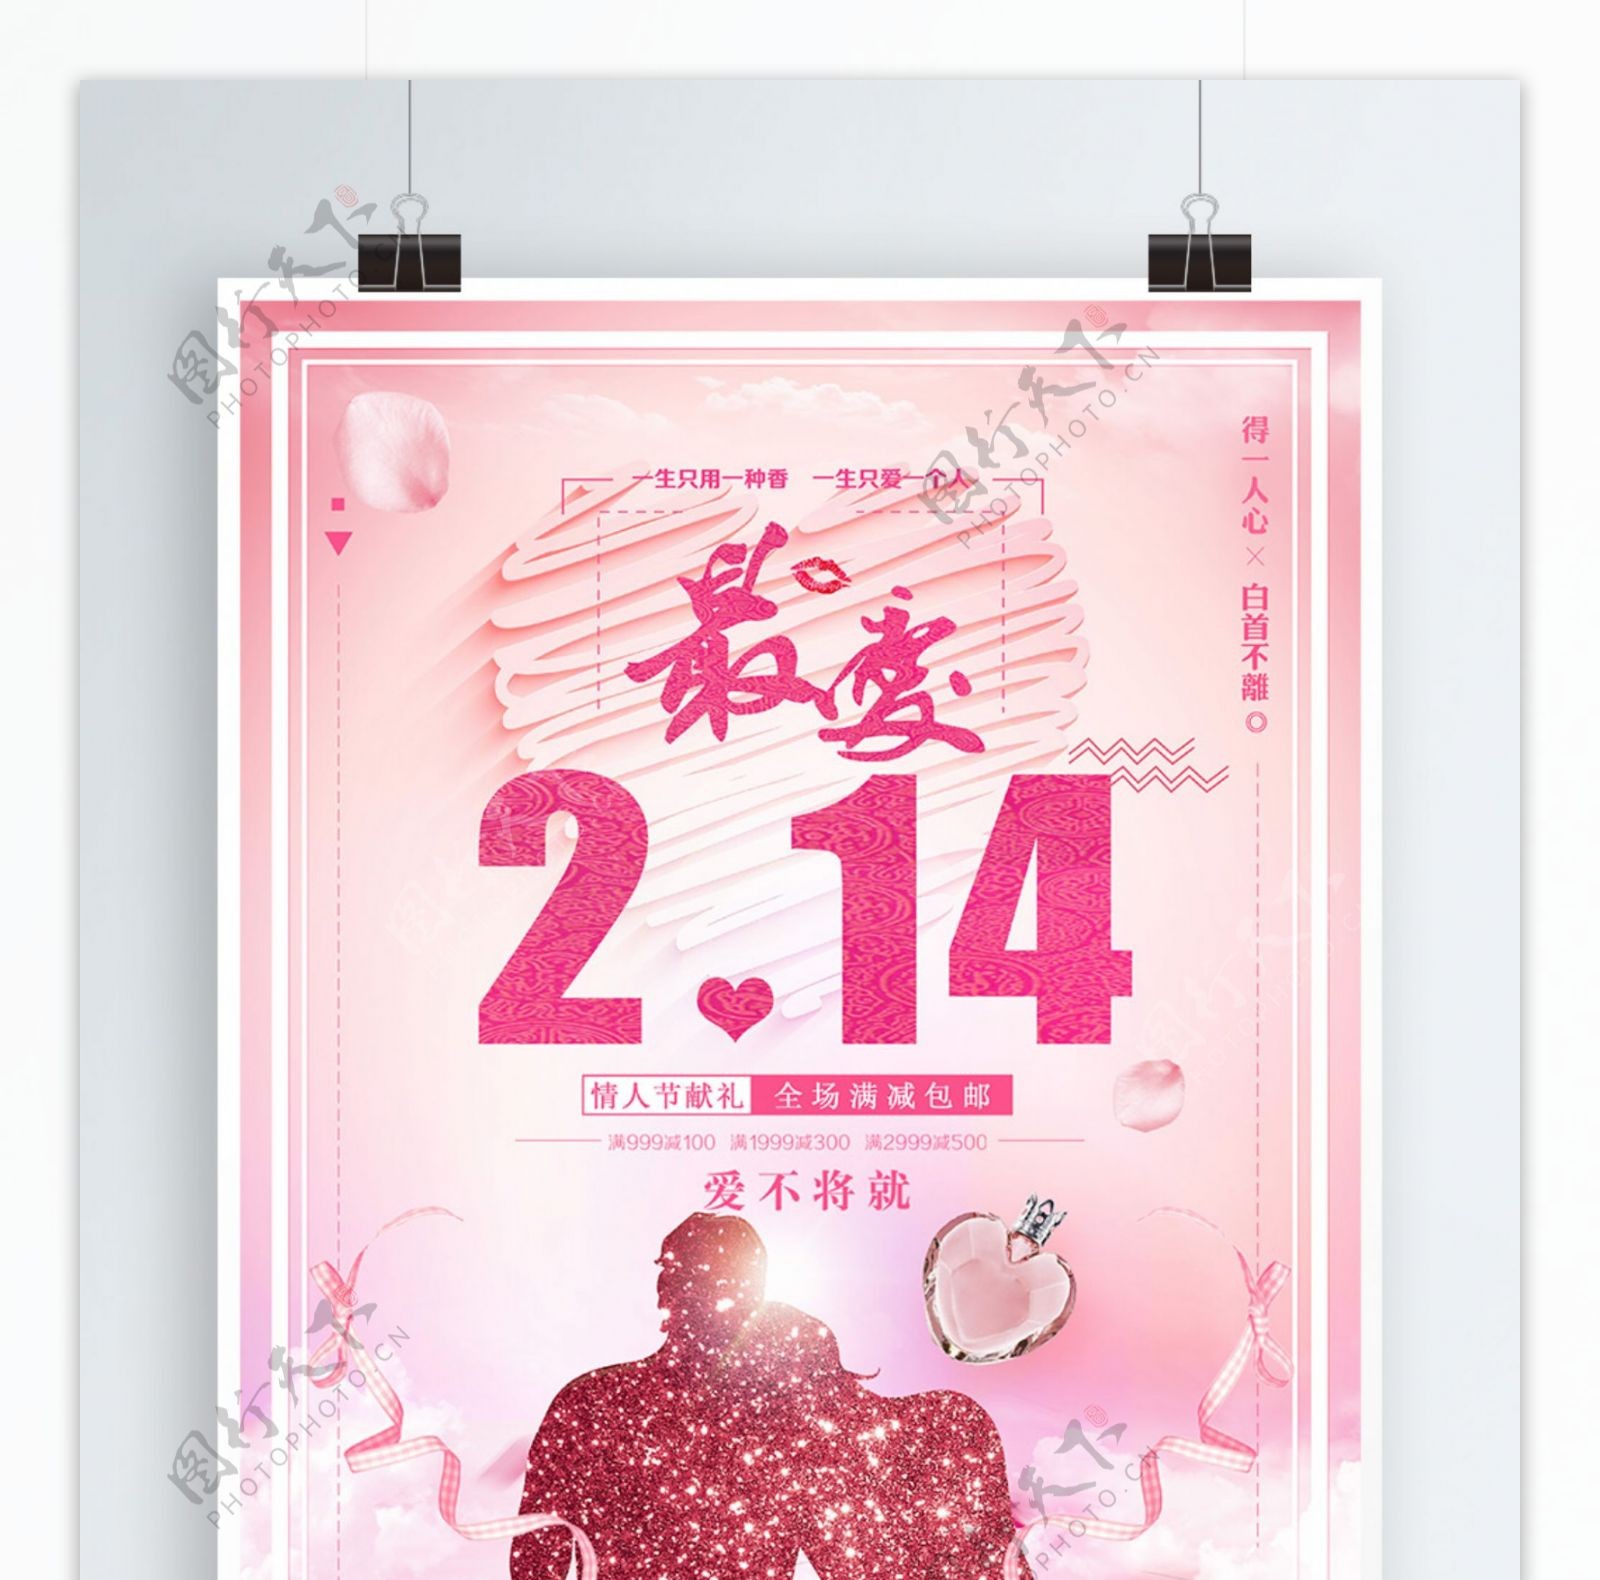 最爱2.14情人节香水促销海报设计psd